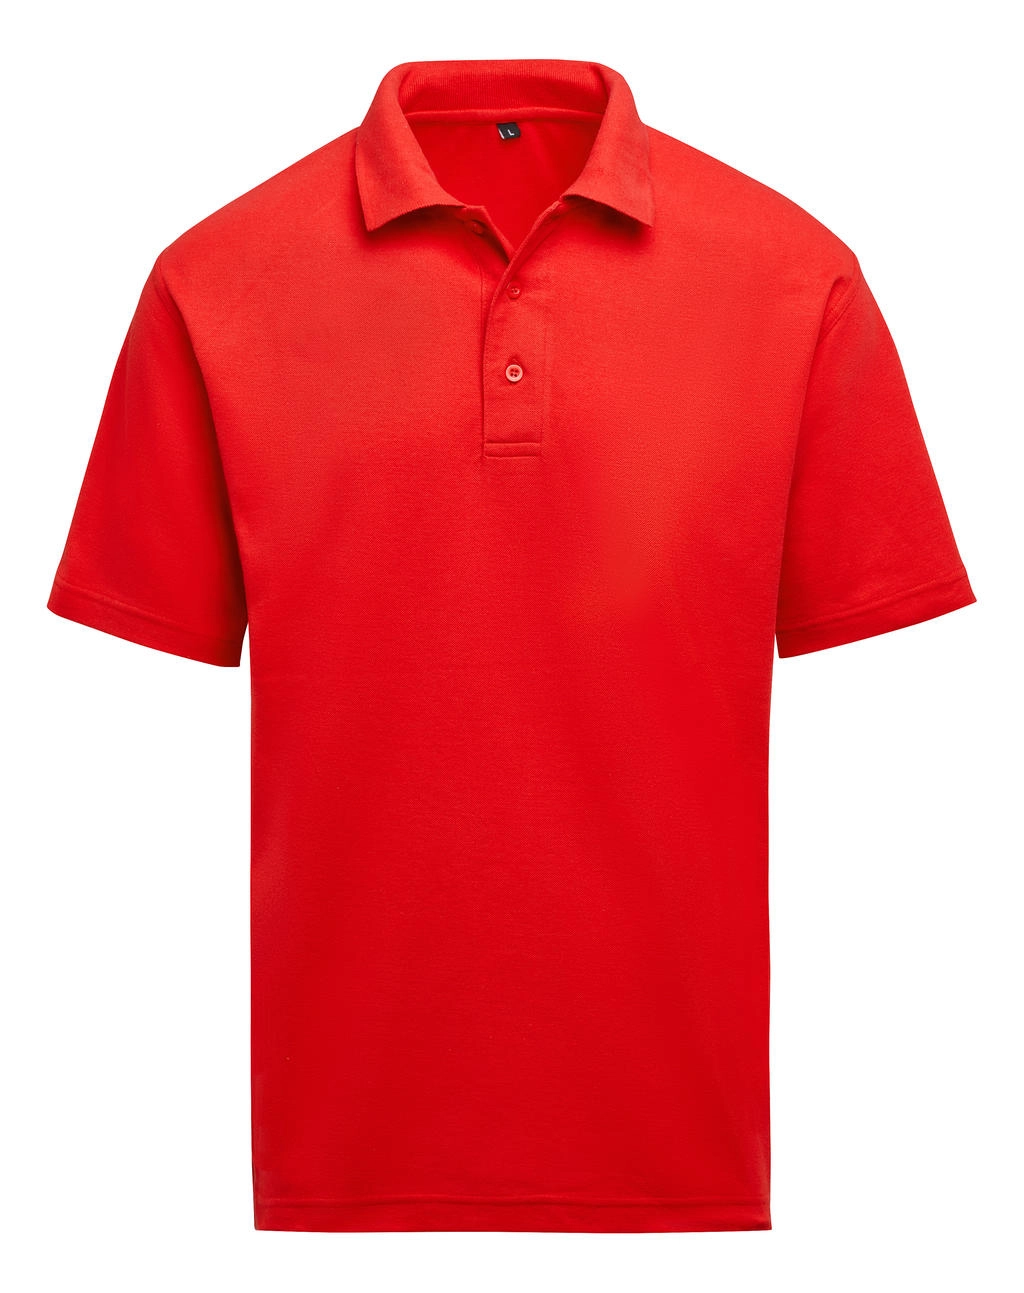 Unisex Polo zum Besticken und Bedrucken in der Farbe Red mit Ihren Logo, Schriftzug oder Motiv.